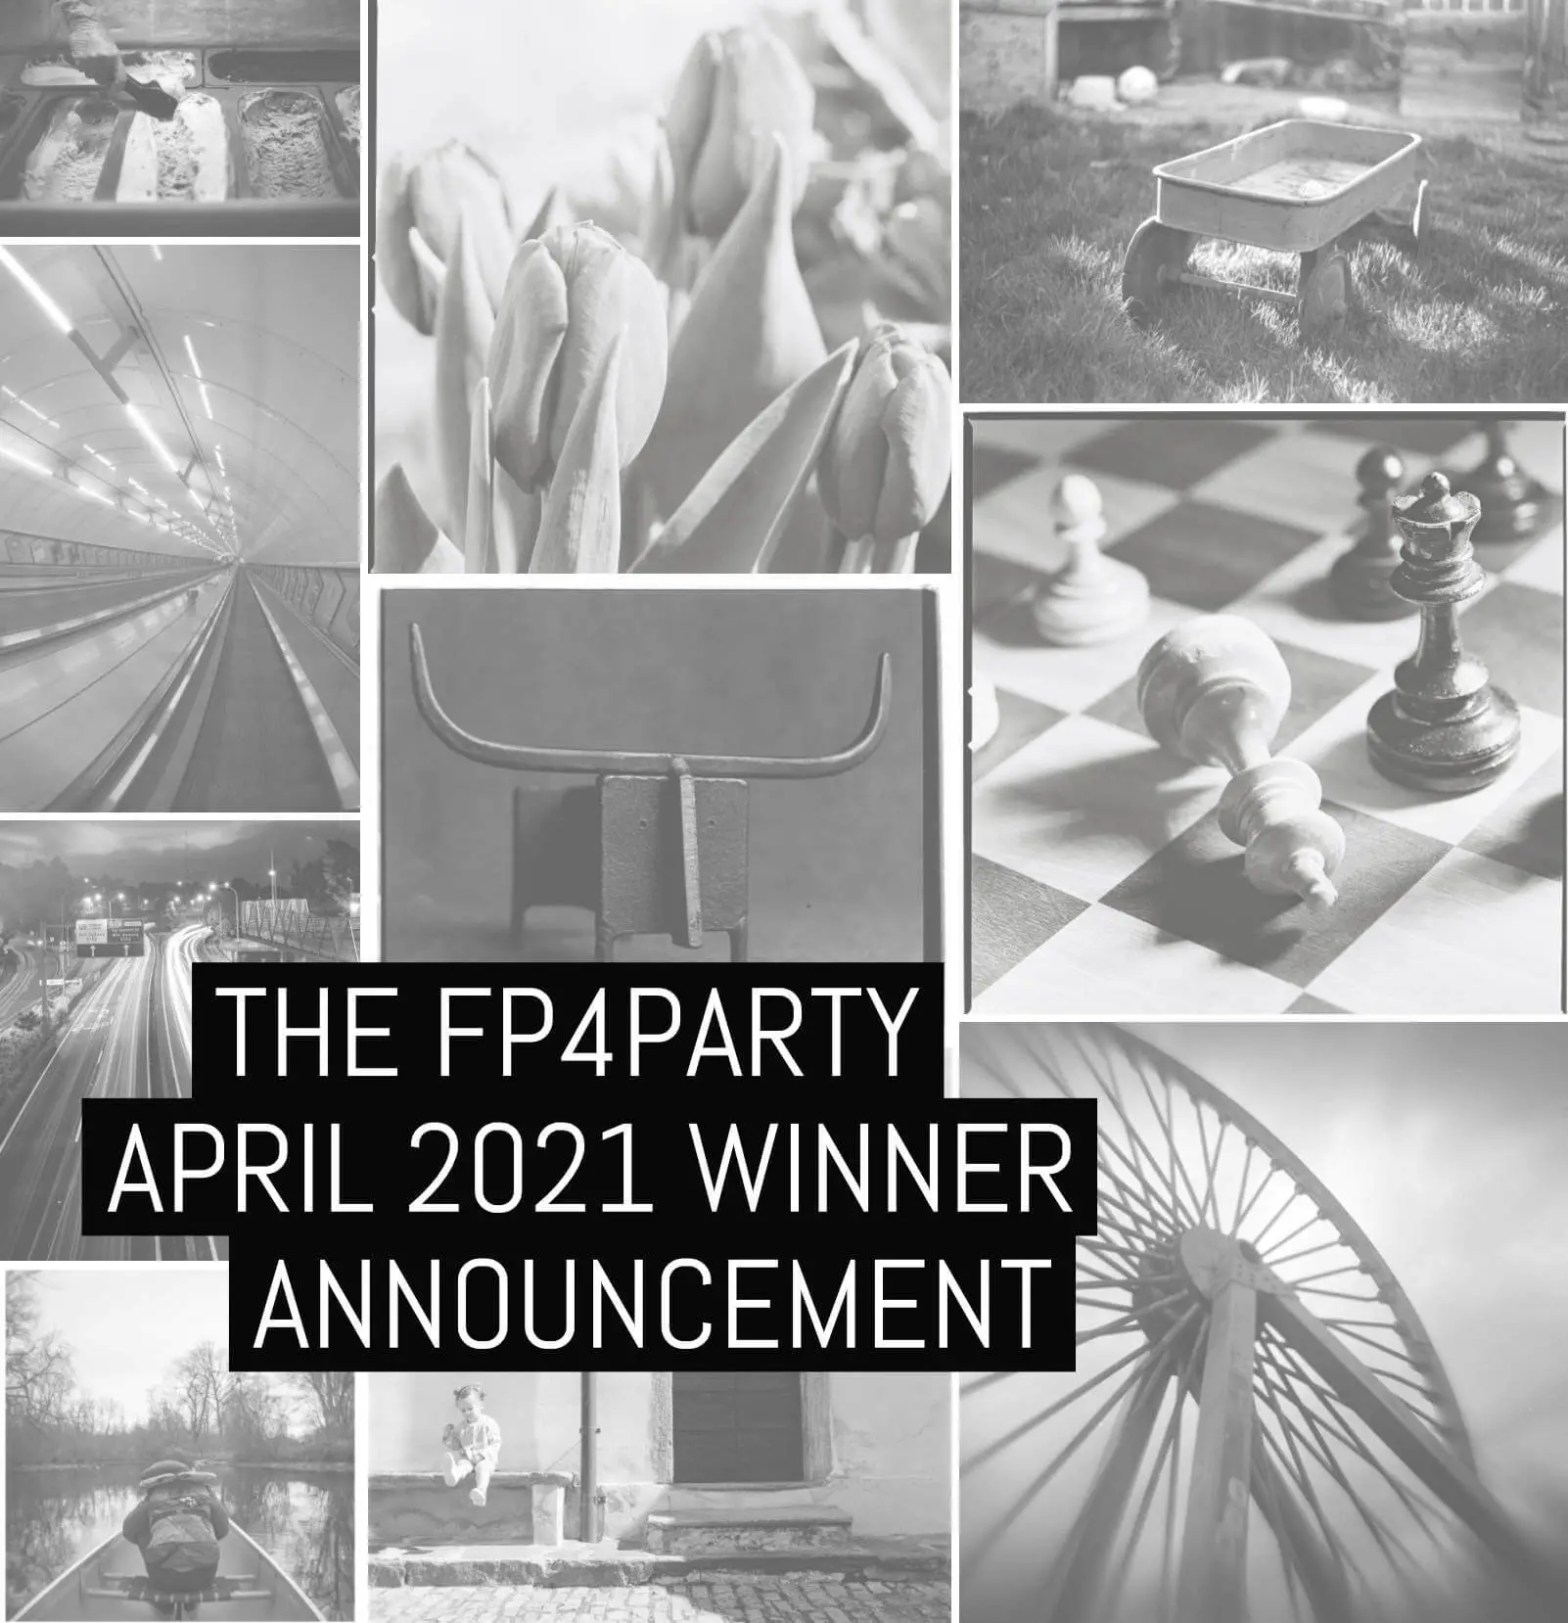 #FP4Party April 2021 winner announcement